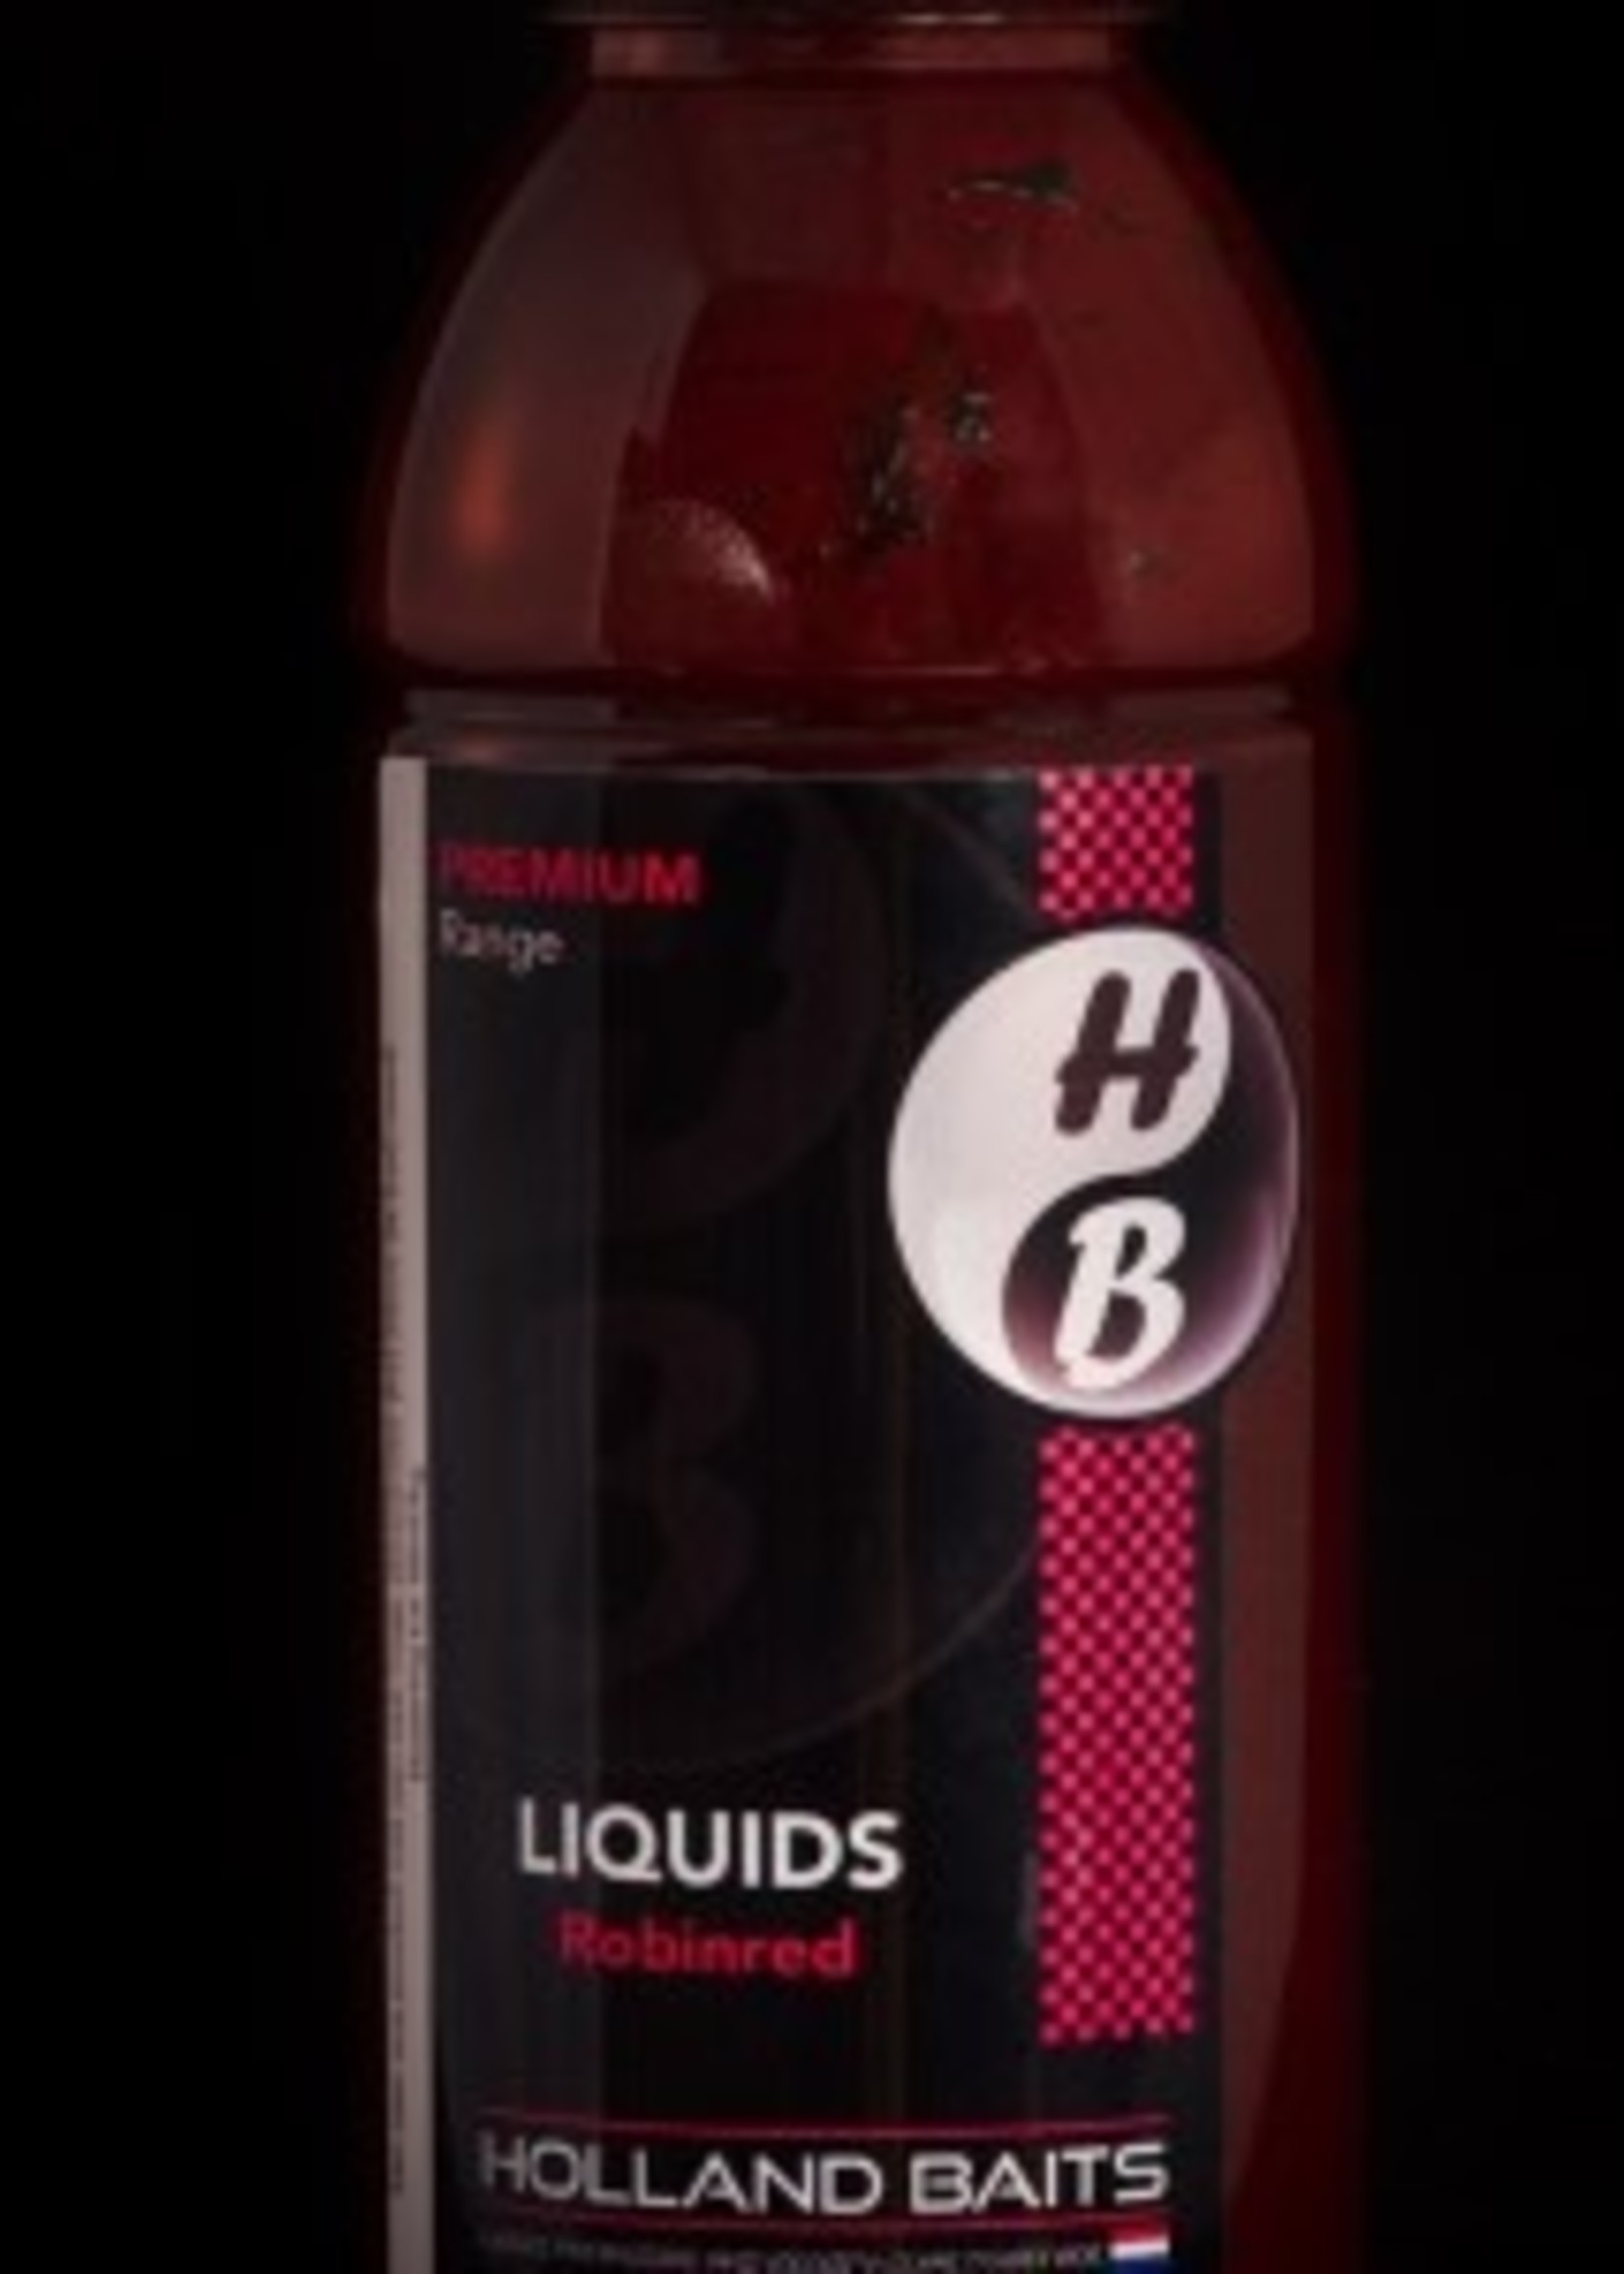 Holland Baits Liquid | 500ml | Holland Baits